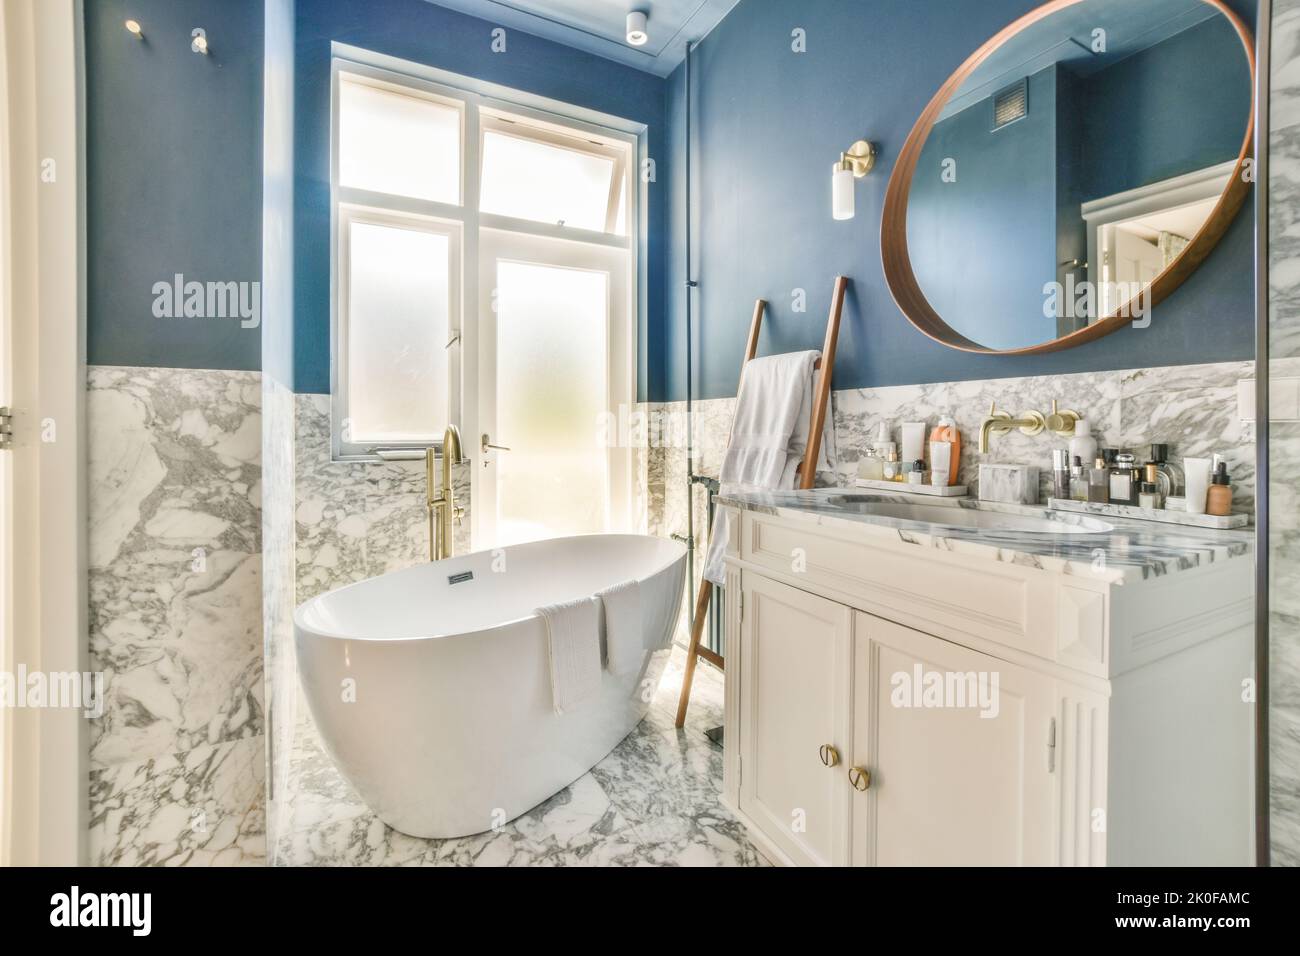 Baignoire avec douche en verre placée dans le coin près du lavabo et des toilettes dans une petite salle de bains lumineuse avec des murs en marbre Banque D'Images